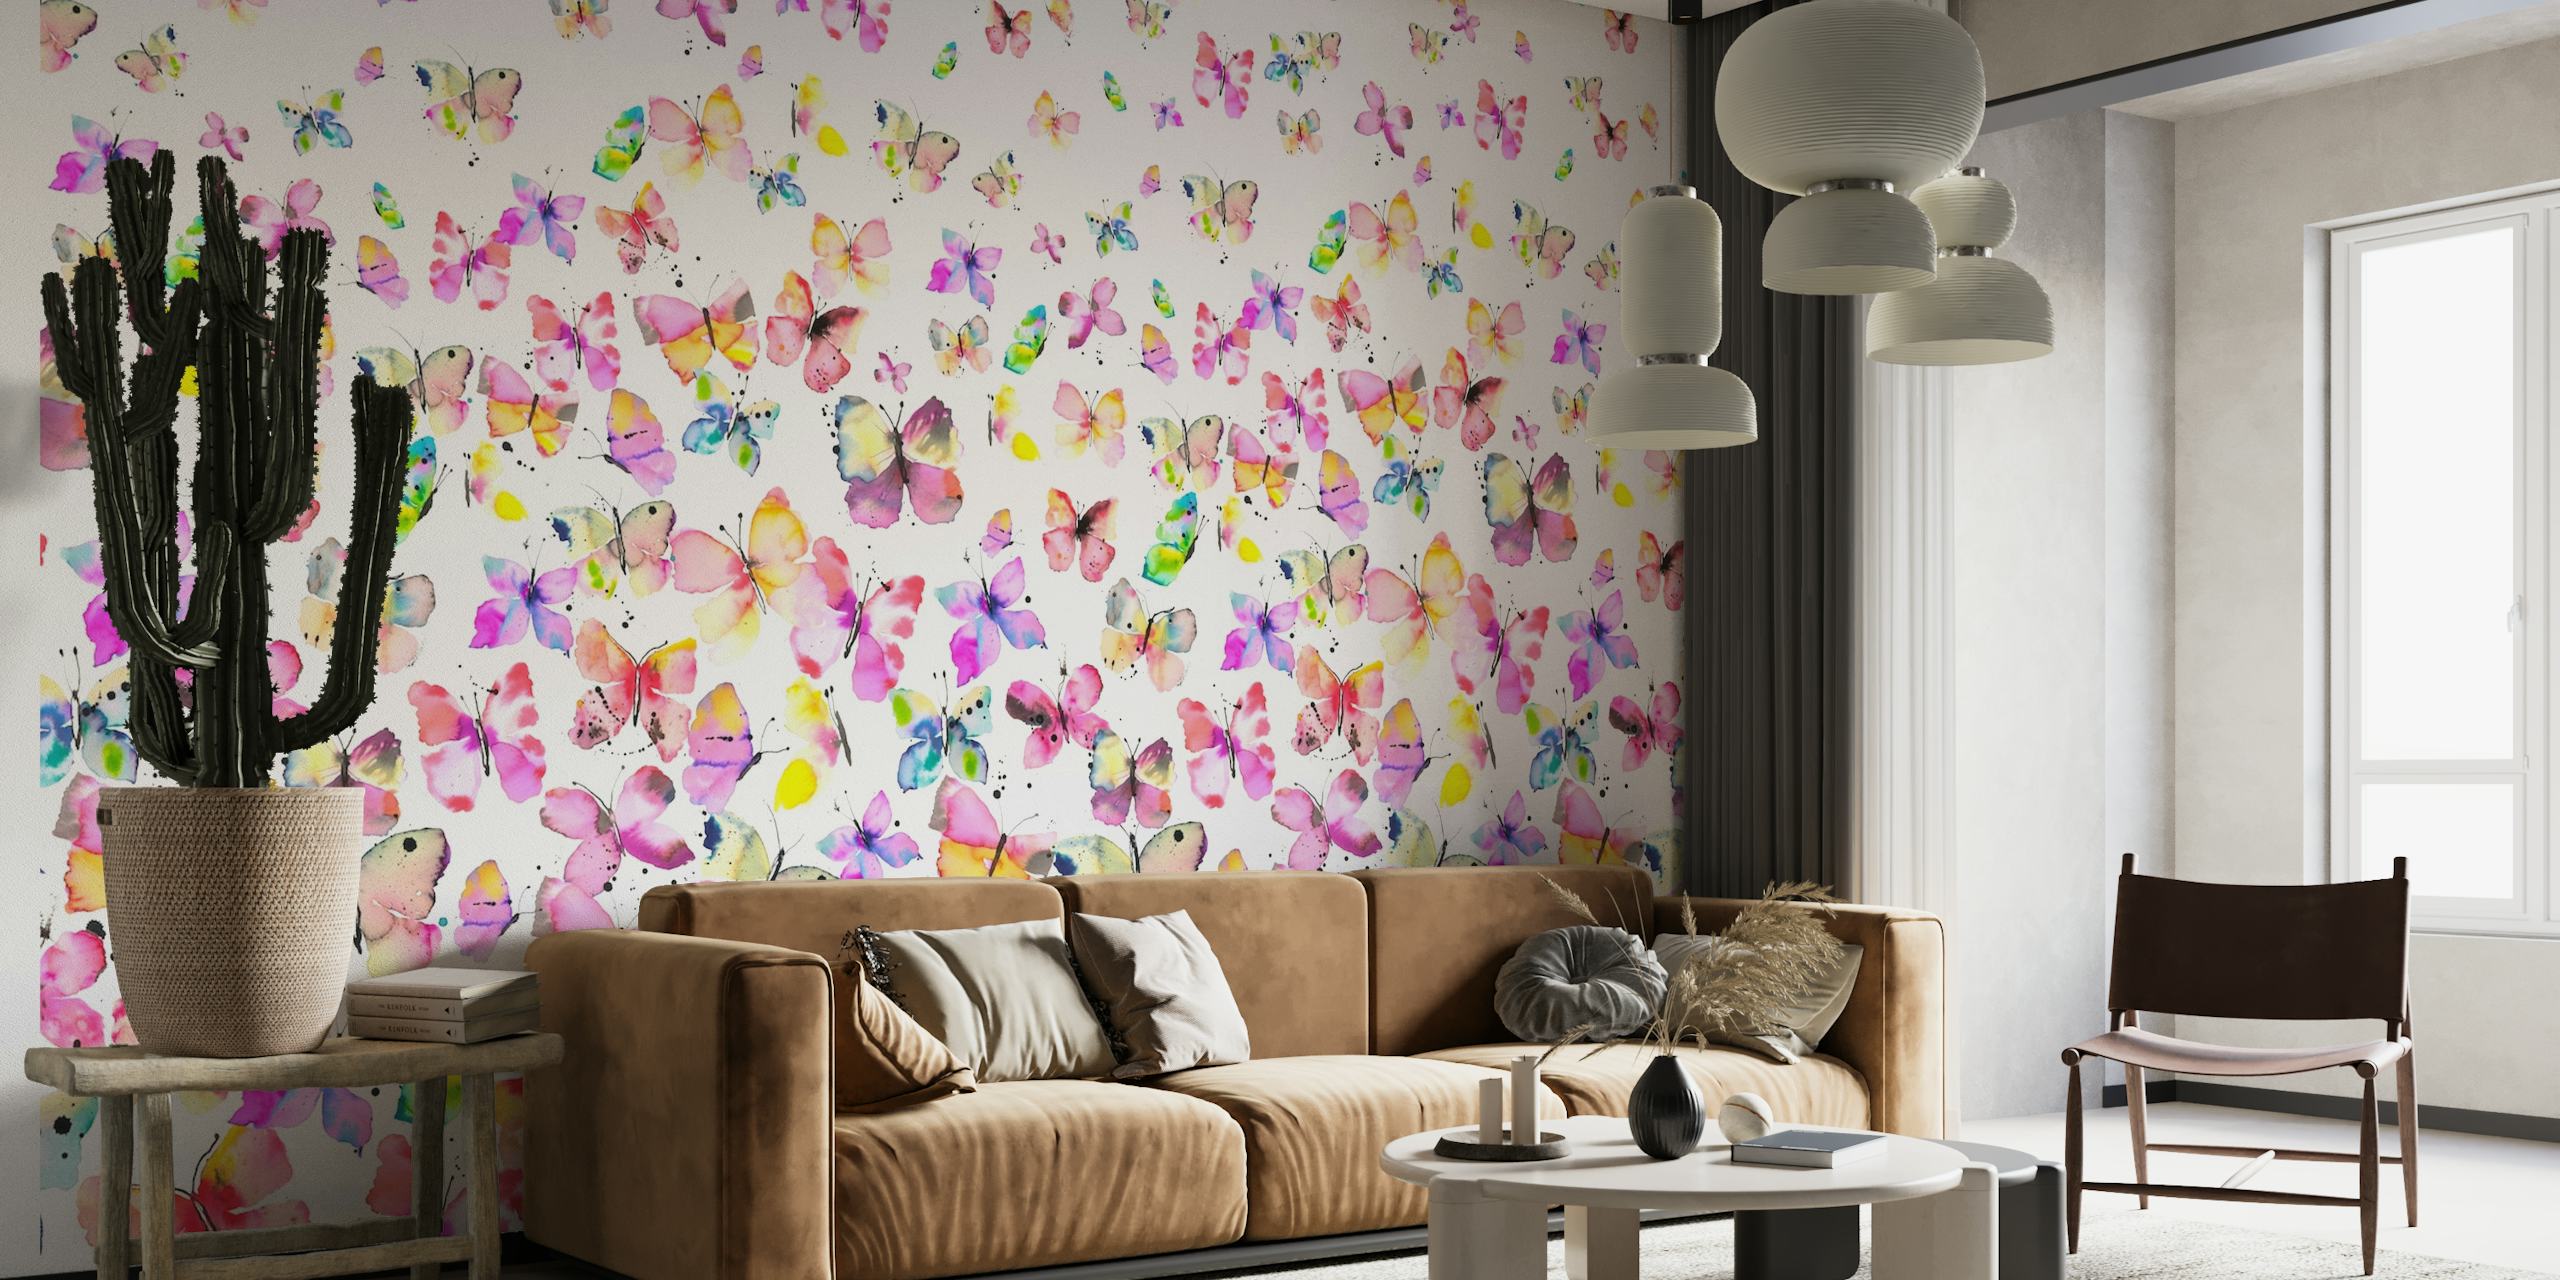 Kleurrijke aquarelvlinders in een degradatiepatroon op een fotobehang